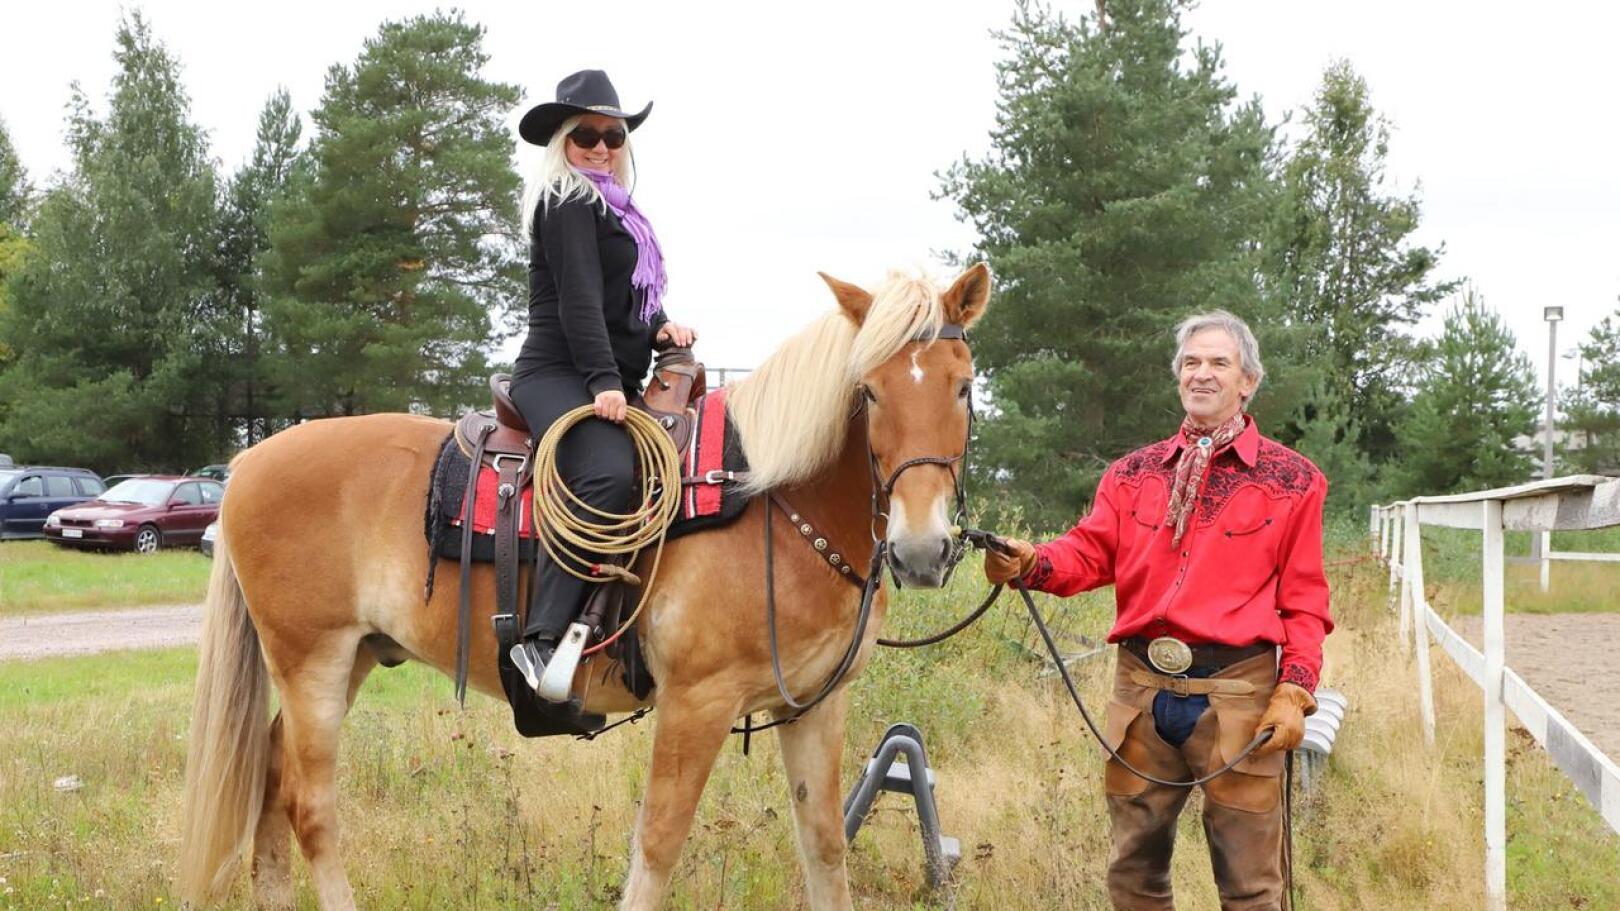 Sarita Sorvisto Heikki Saukon 17-vuotiaan Koda-ruunan selässä. Sorvisto on ollut heppatyttö pienestä pitäen ja toteaa, että hevosen selässä käyminen nostattaa kuumetta hankkia oma hevonen.